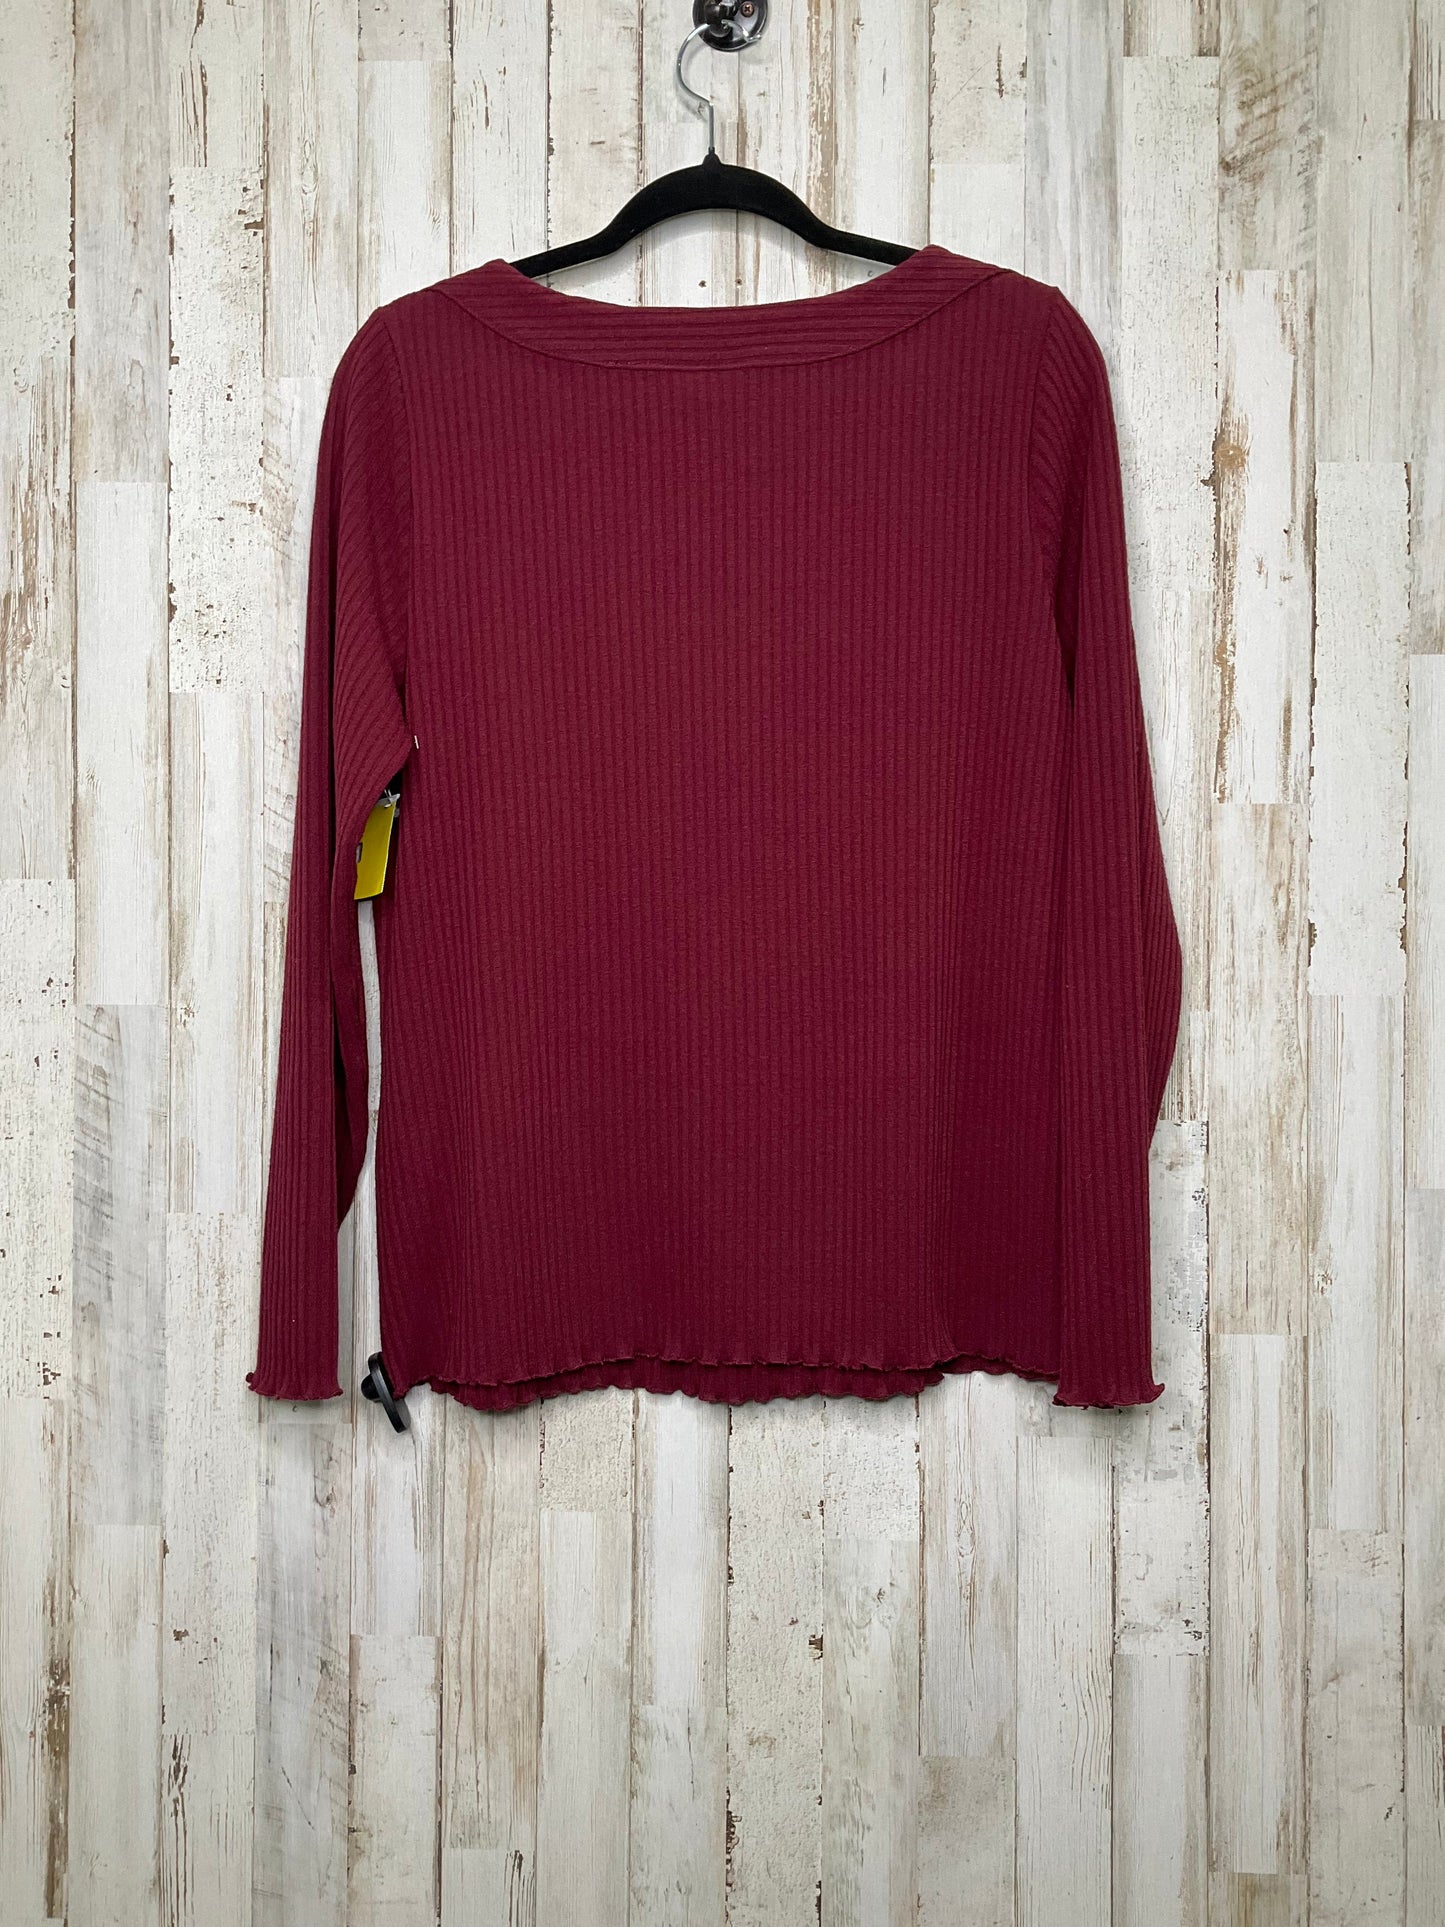 Sweater By Rafaella  Size: L